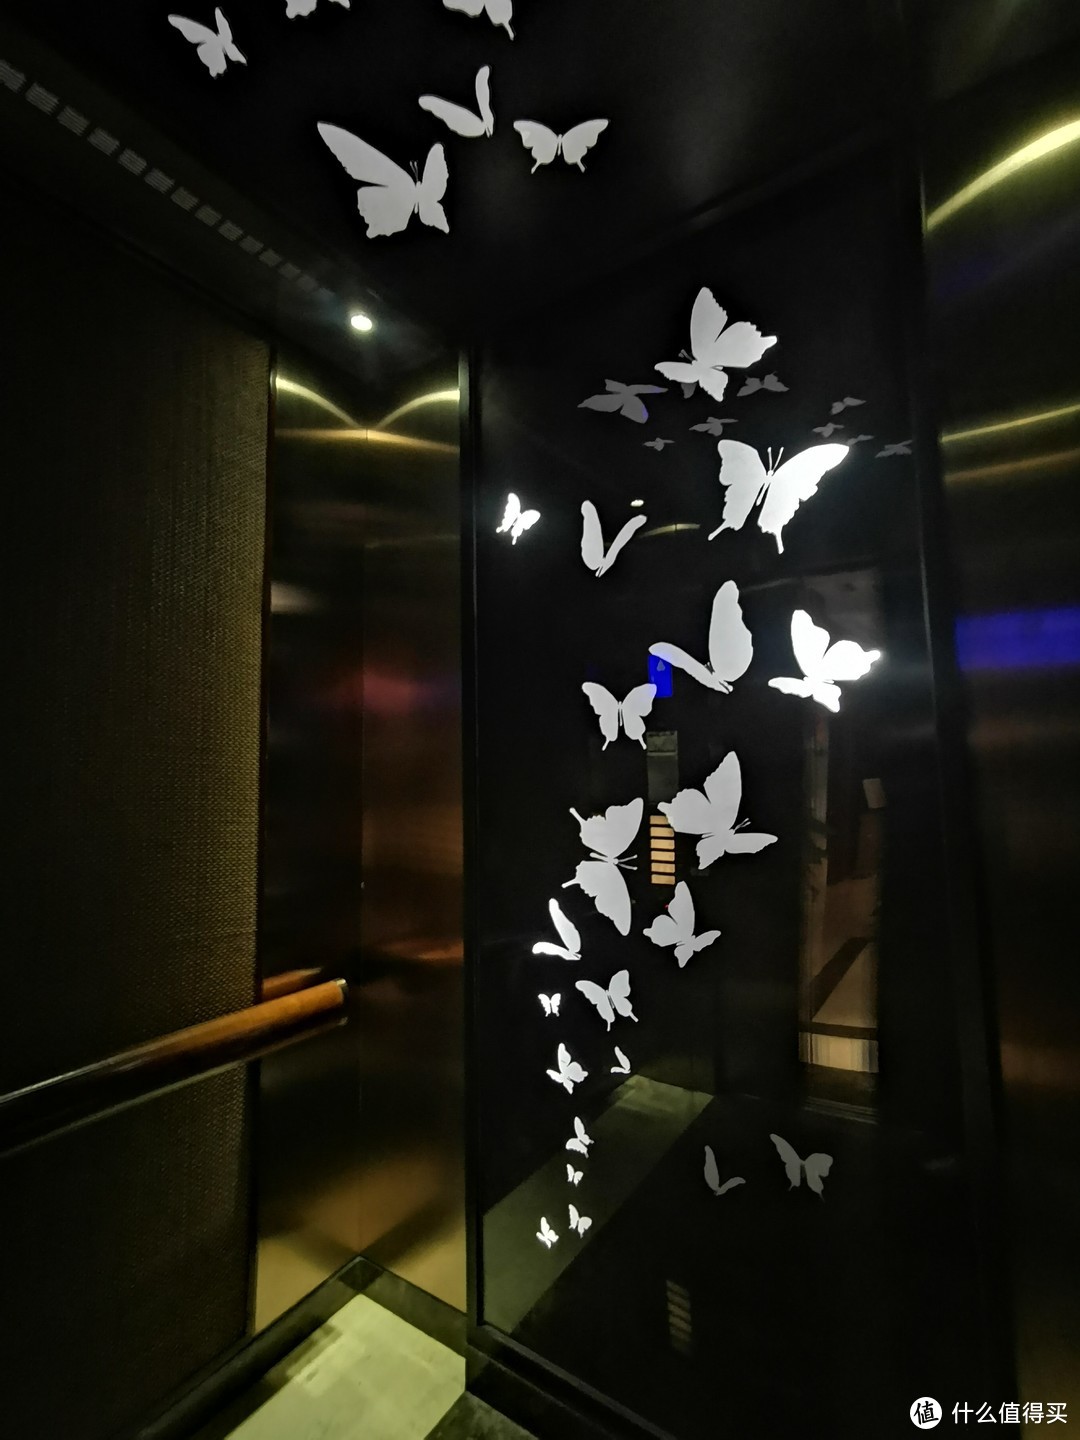 电梯里面的装饰画也是对应彩蝶纷飞的主题